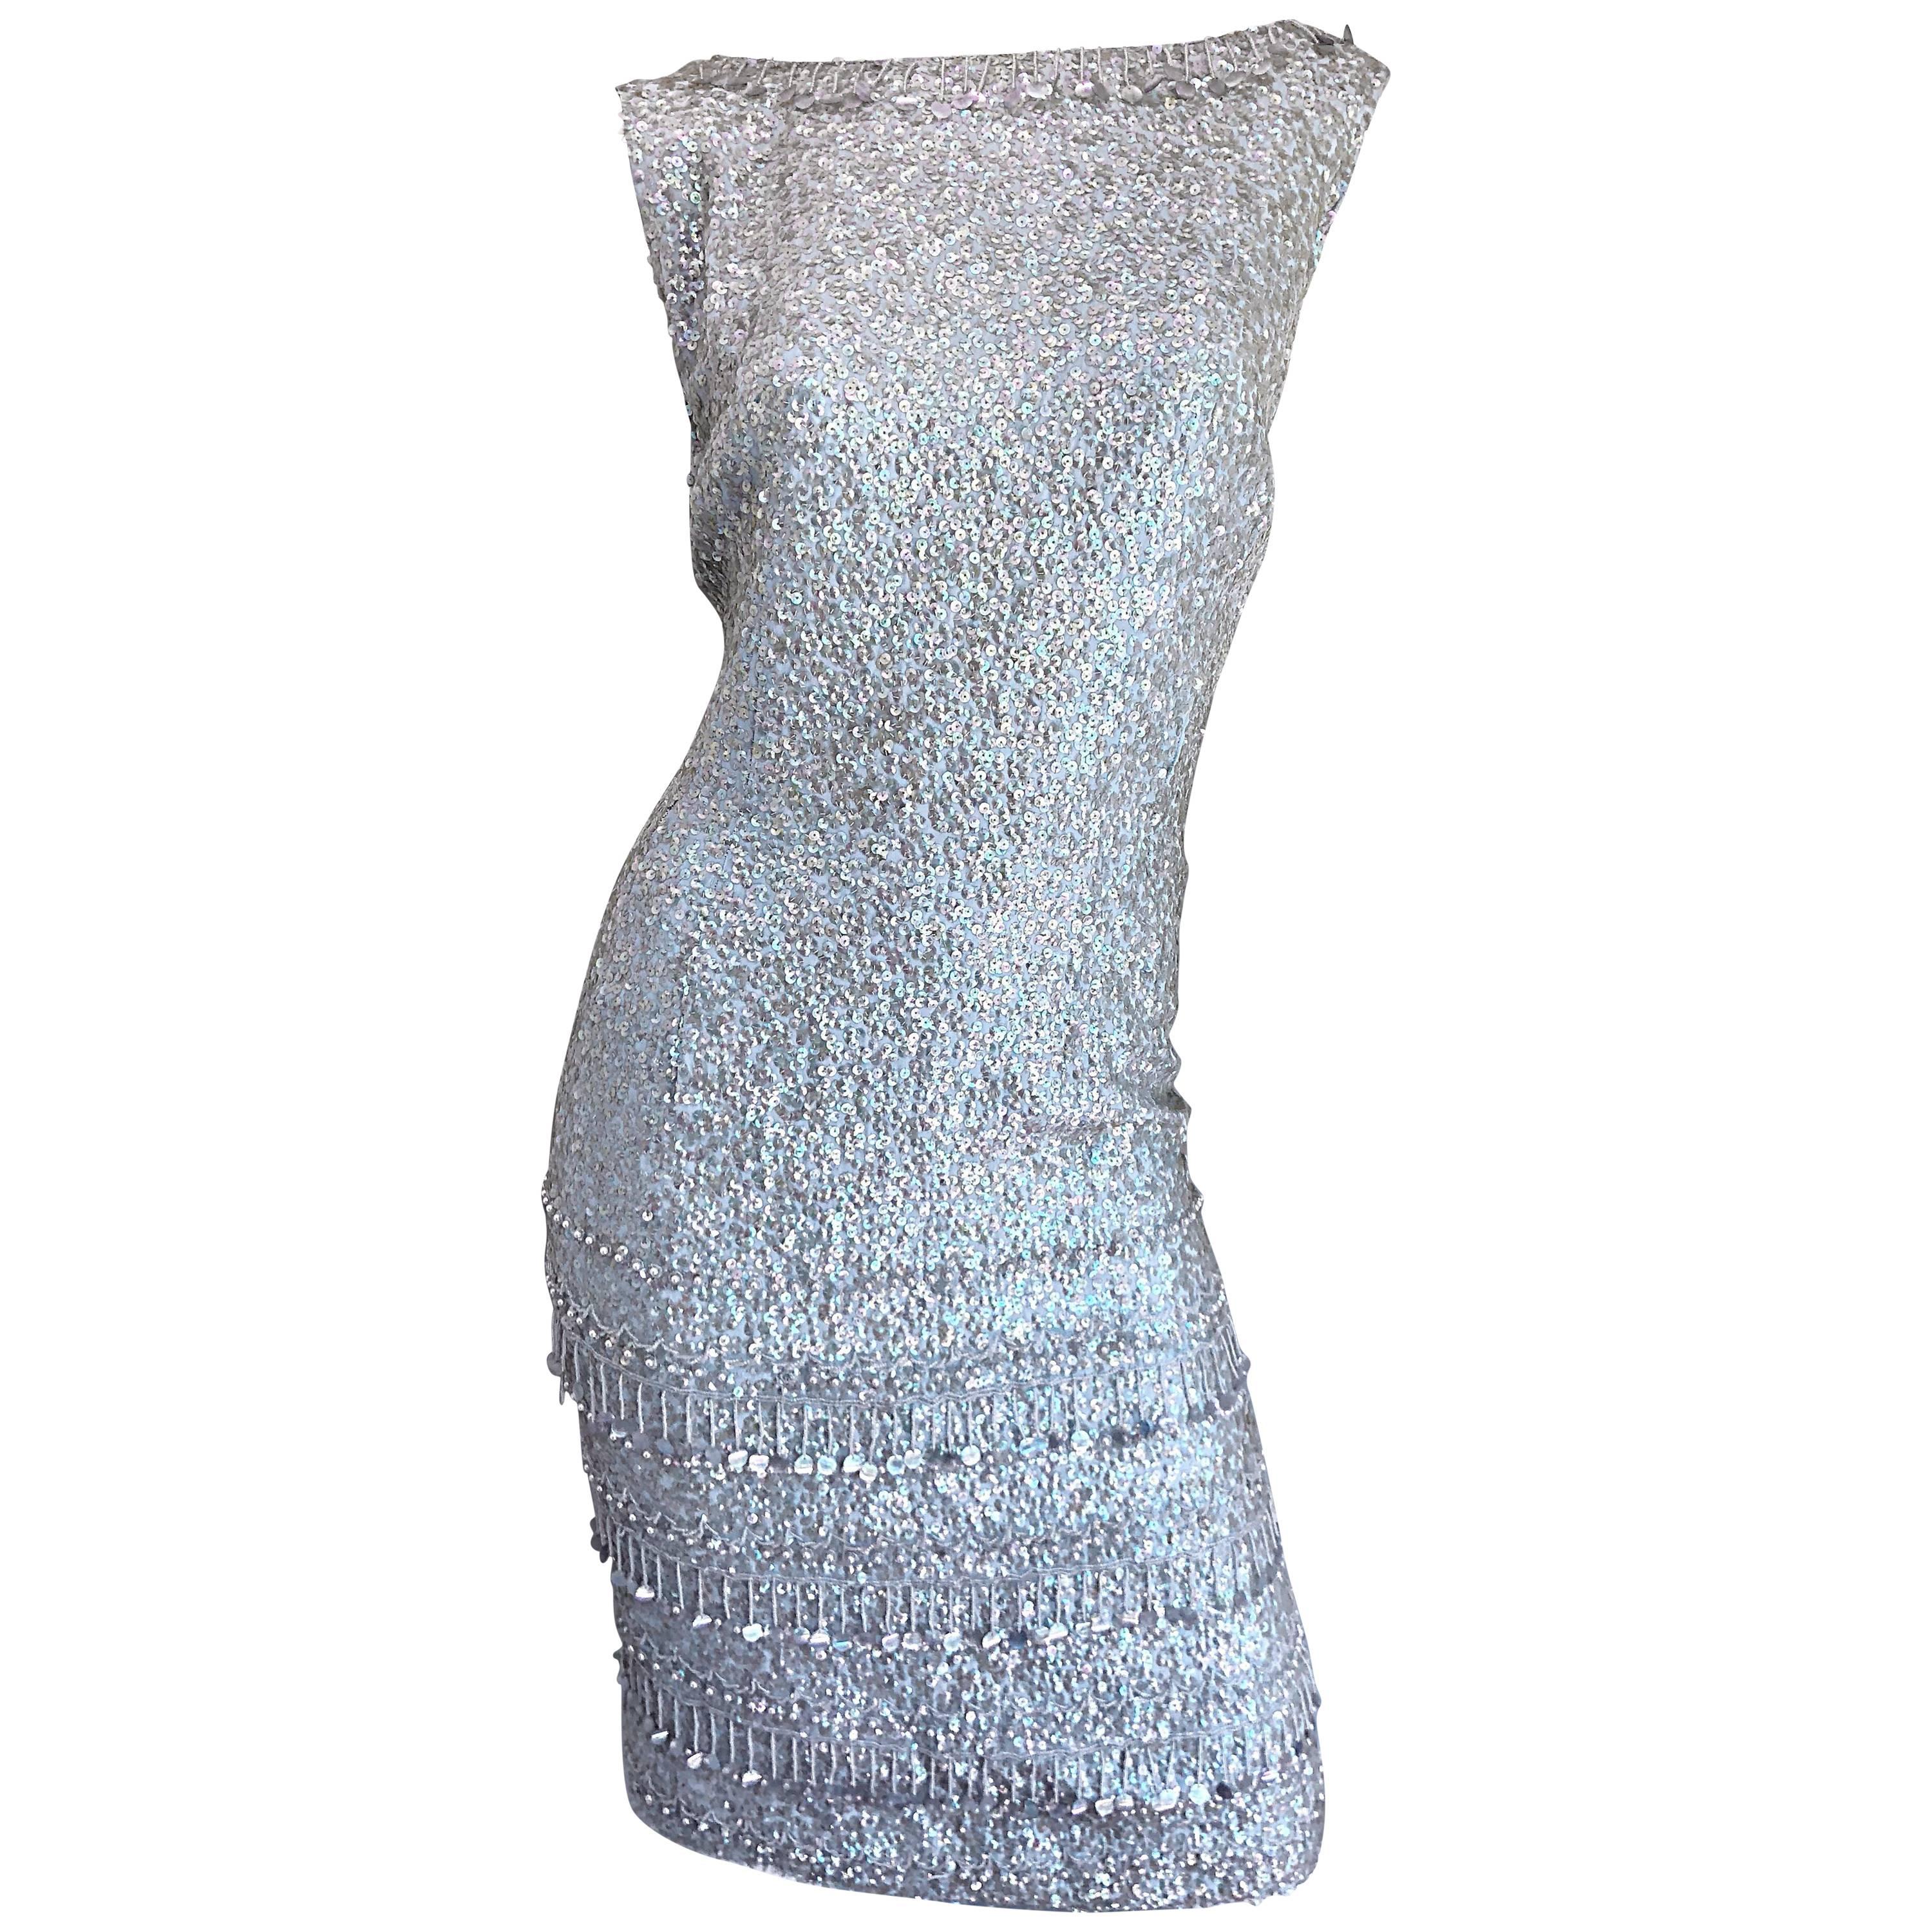 1950s Gene Shelly's Light Blue Silk Fully Sequined + Beaded Vintage 50s Dress